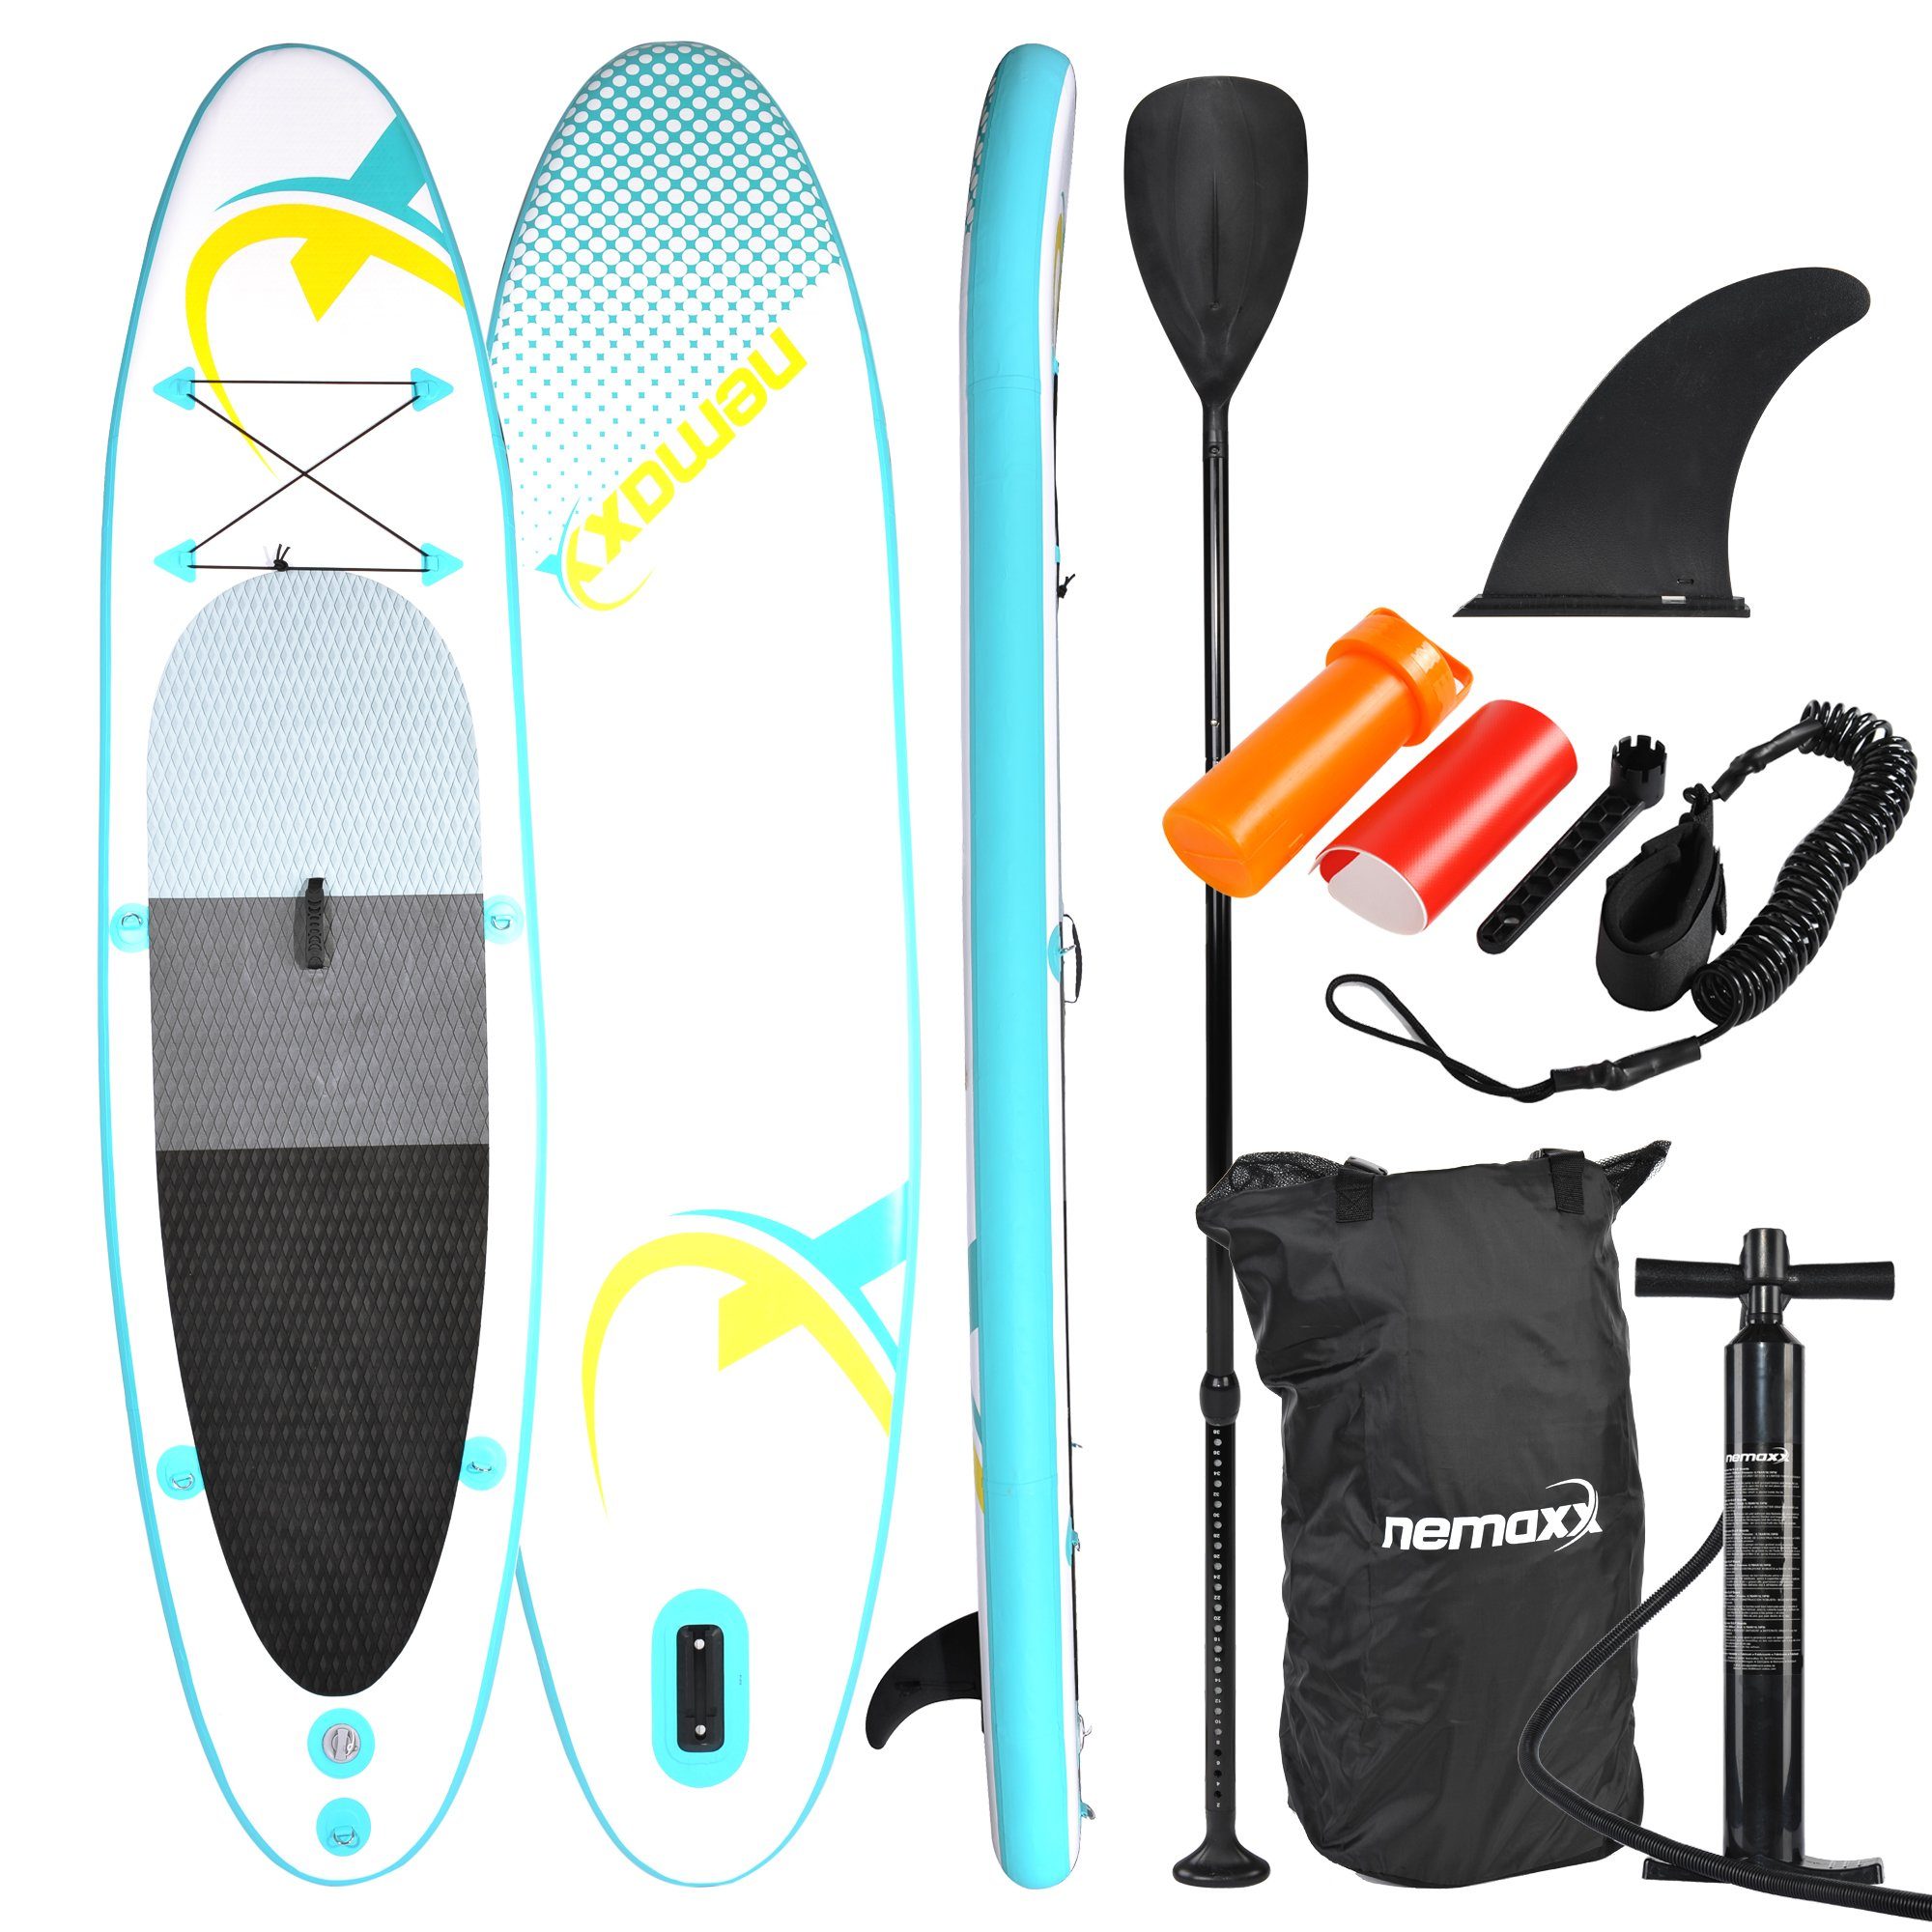 Paddel up Tasche, & Board - Surfbrett, Surf-Board transportieren türkis/gelb 320x78x15cm, inkl. PB320 Nemaxx - aufblasbar SUP-Board, - leicht Paddle Inflatable zu NEMAXX Stand